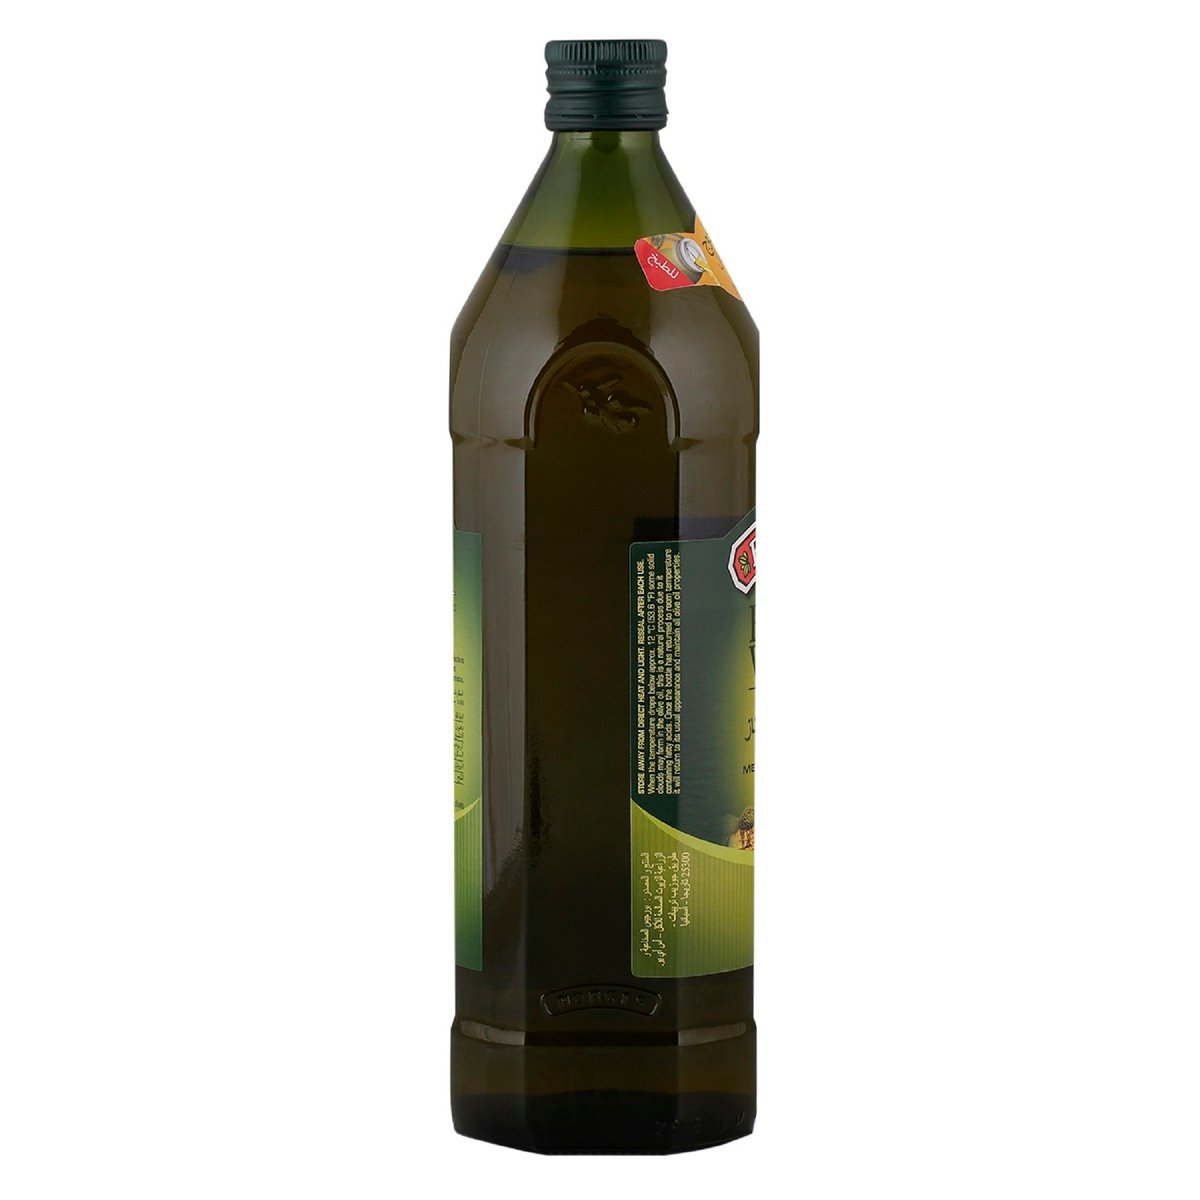 Borges Original Extra Virgin Olive Oil 1 Litre